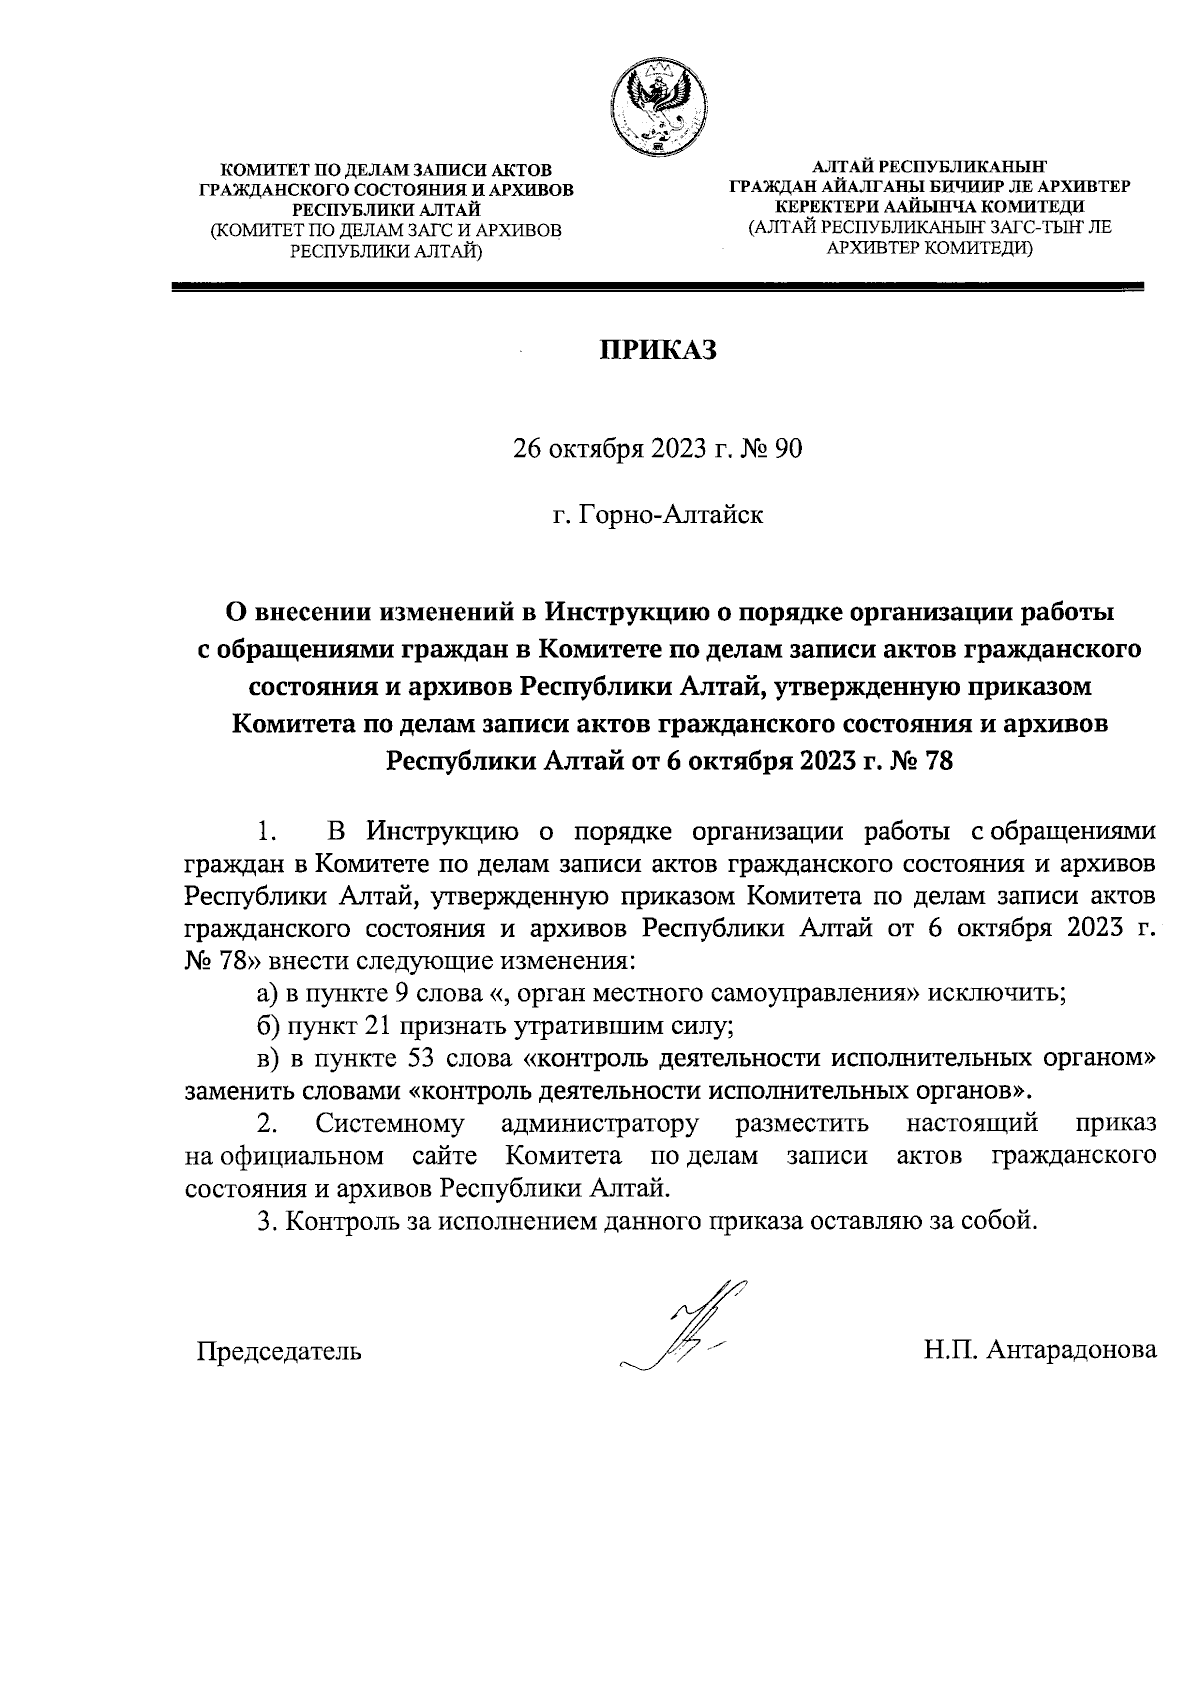 Печать документов в Ижевске